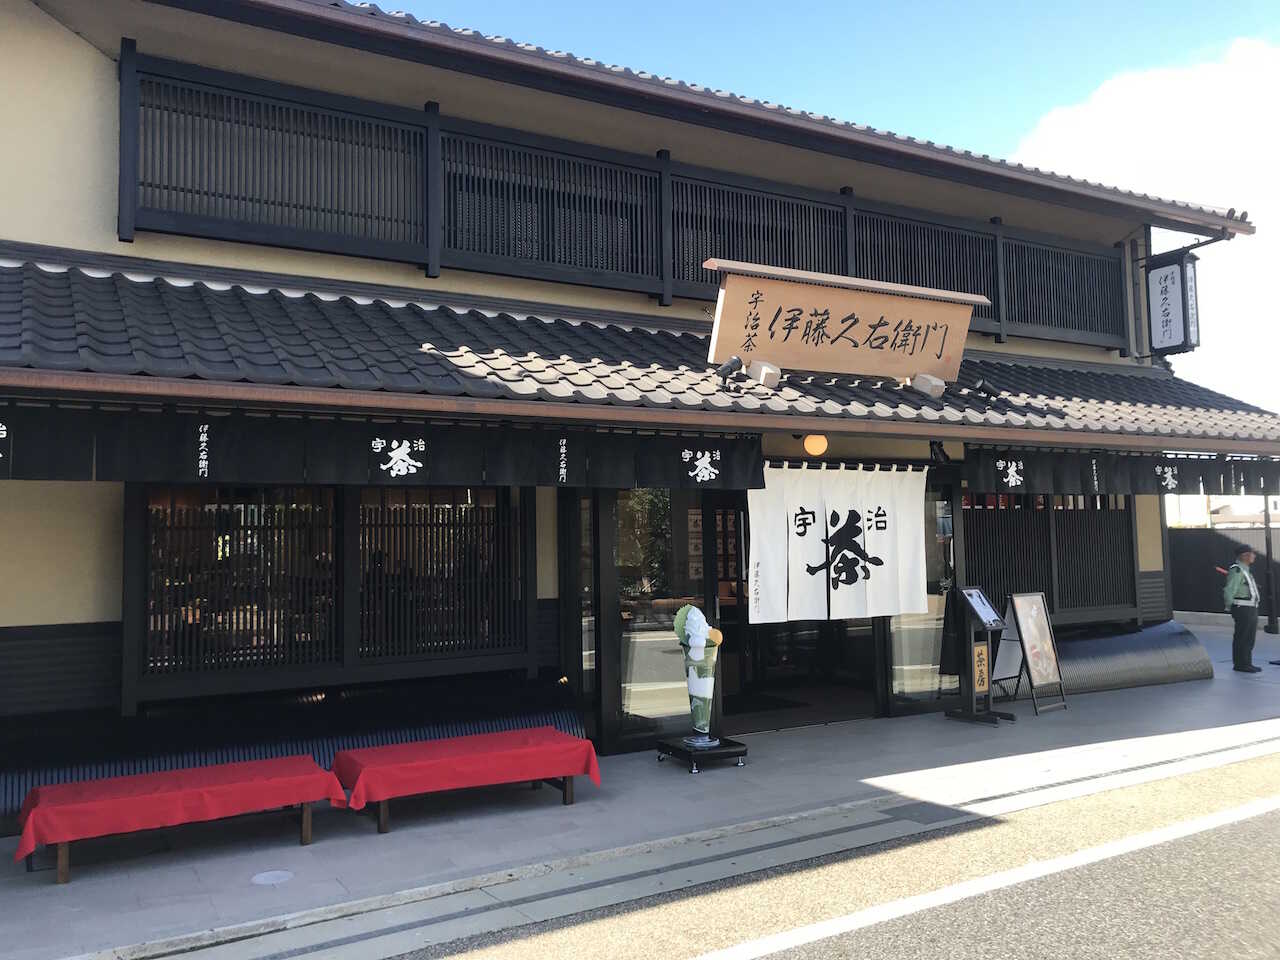 Te butik i Sydlige Kyoto